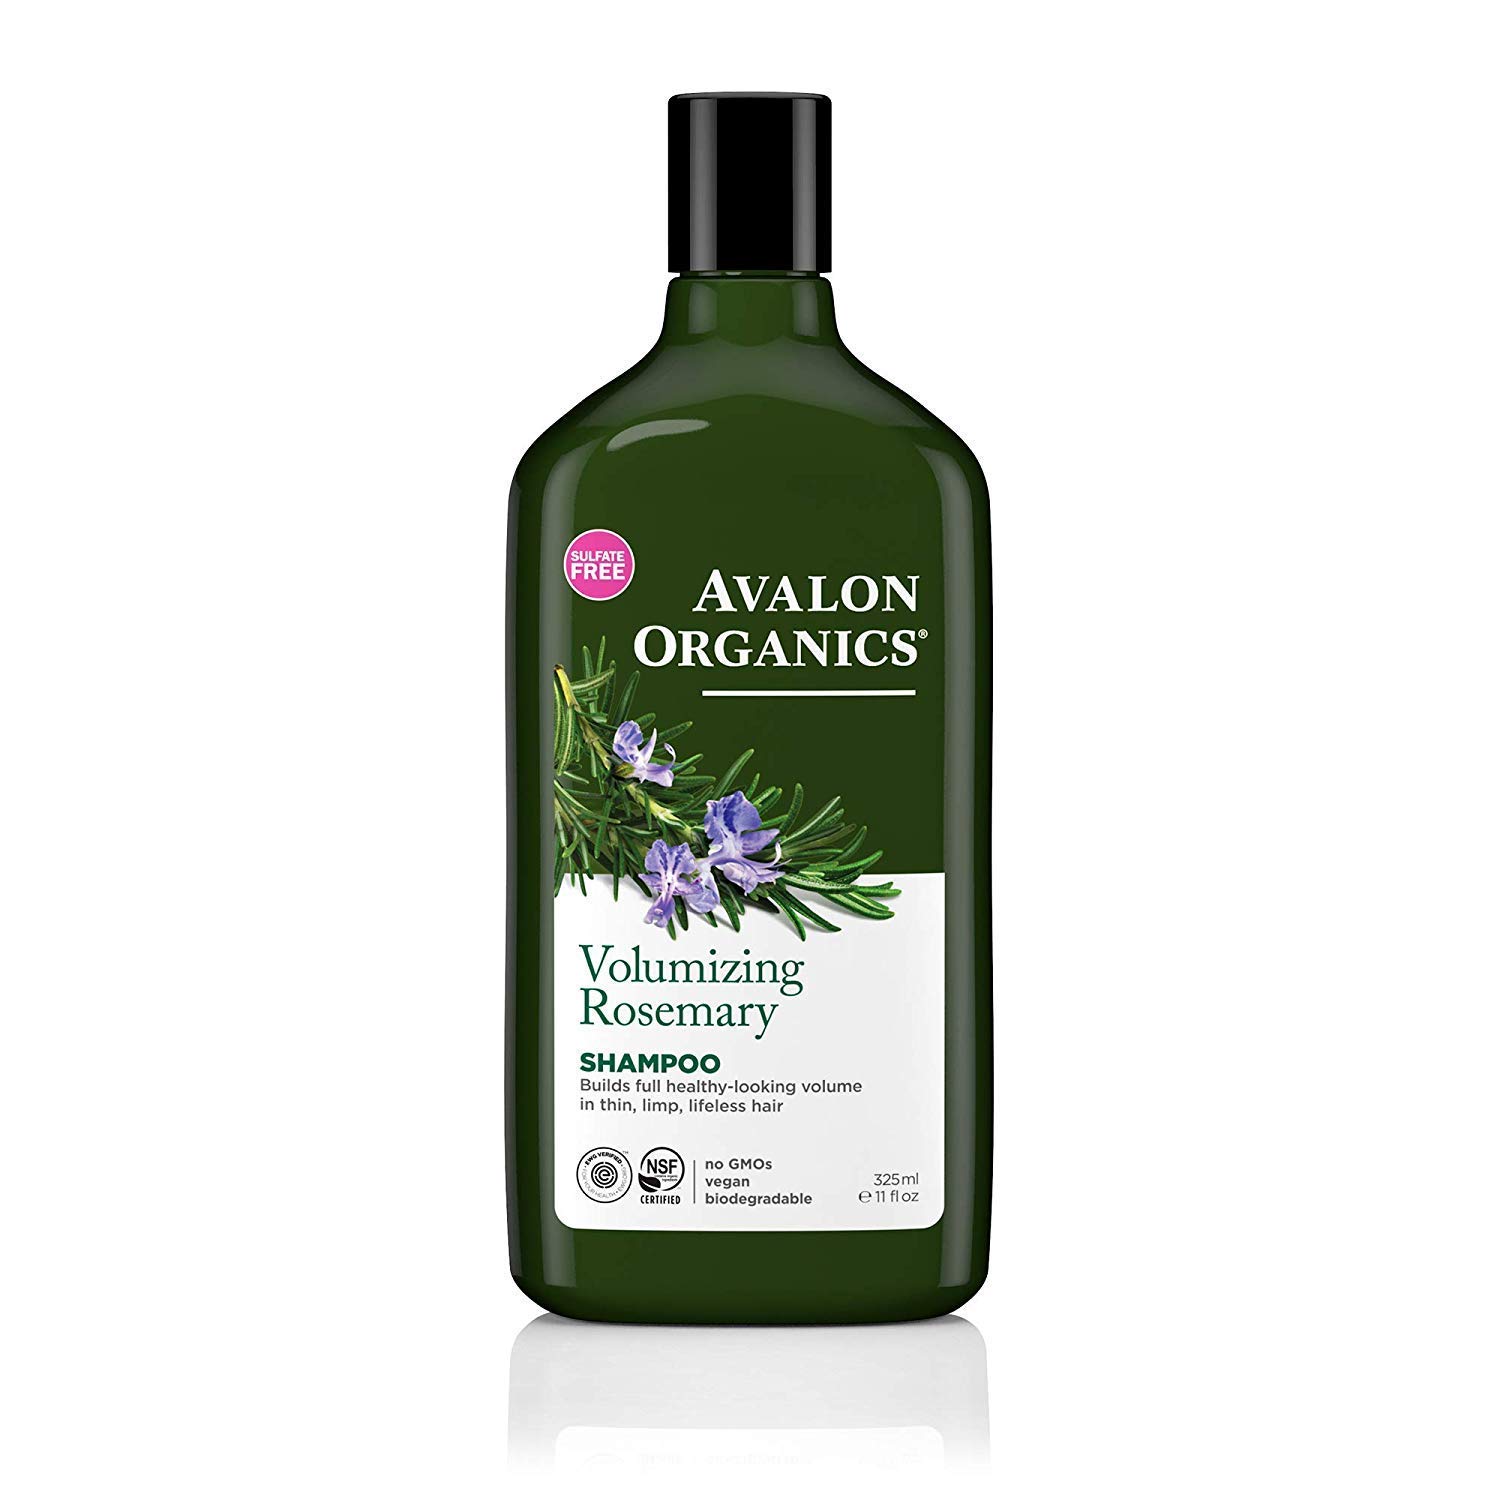 avalon organics szampon coconut shampoo